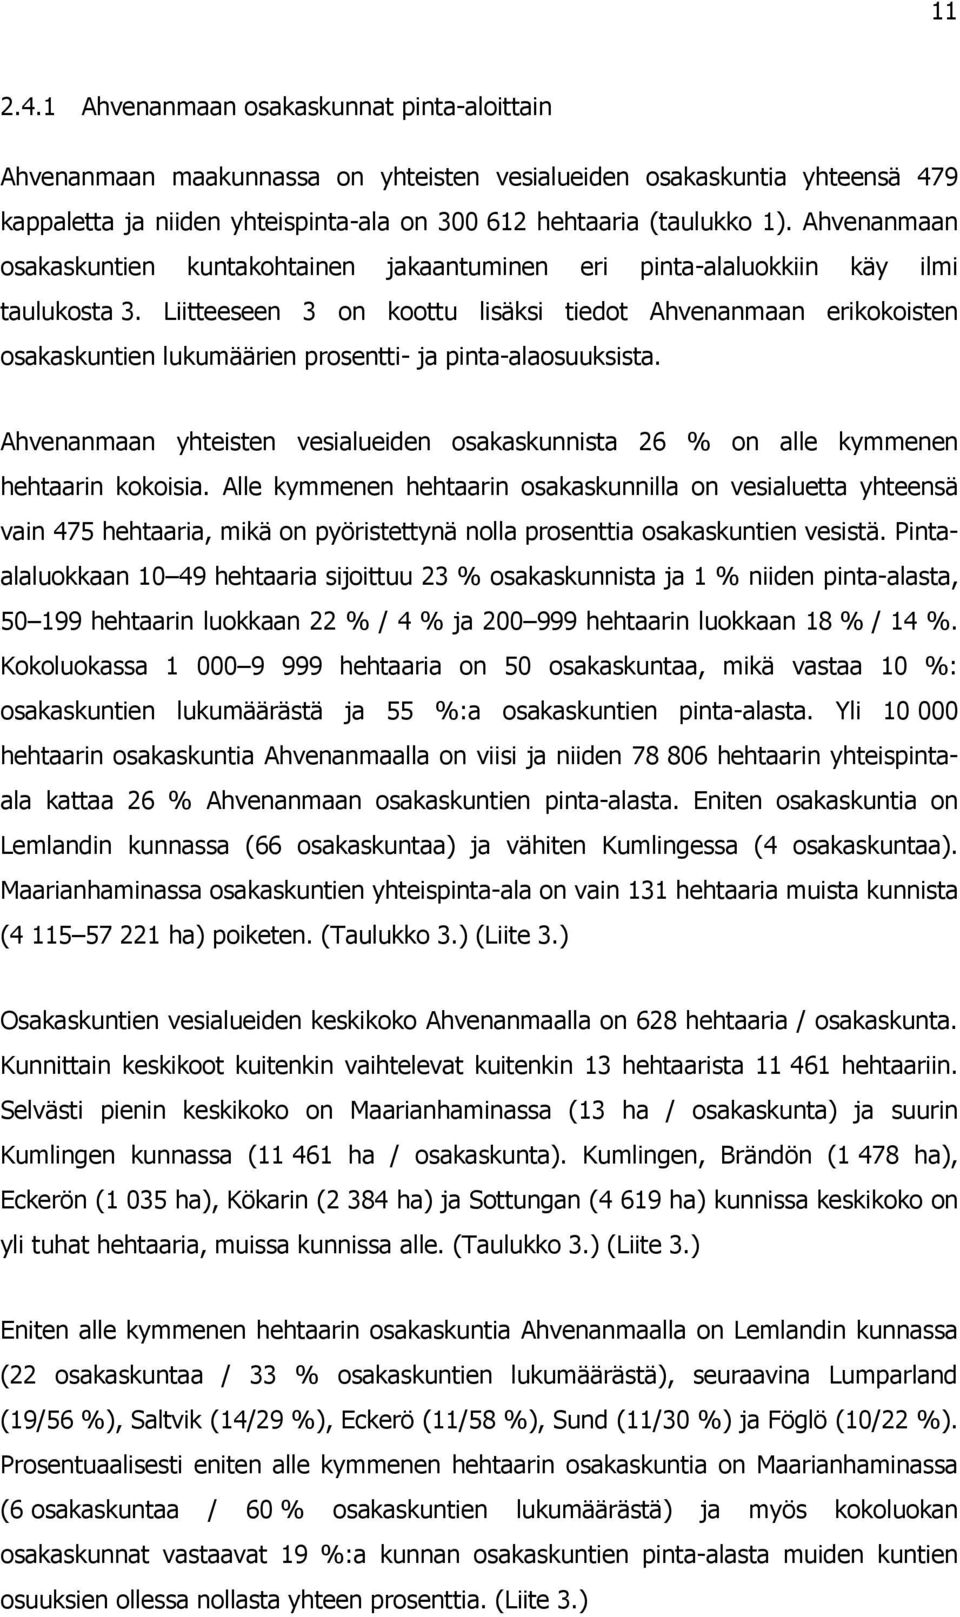 Liitteeseen 3 on koottu lisäksi tiedot Ahvenanmaan erikokoisten osakaskuntien lukumäärien prosentti- ja pinta-alaosuuksista.